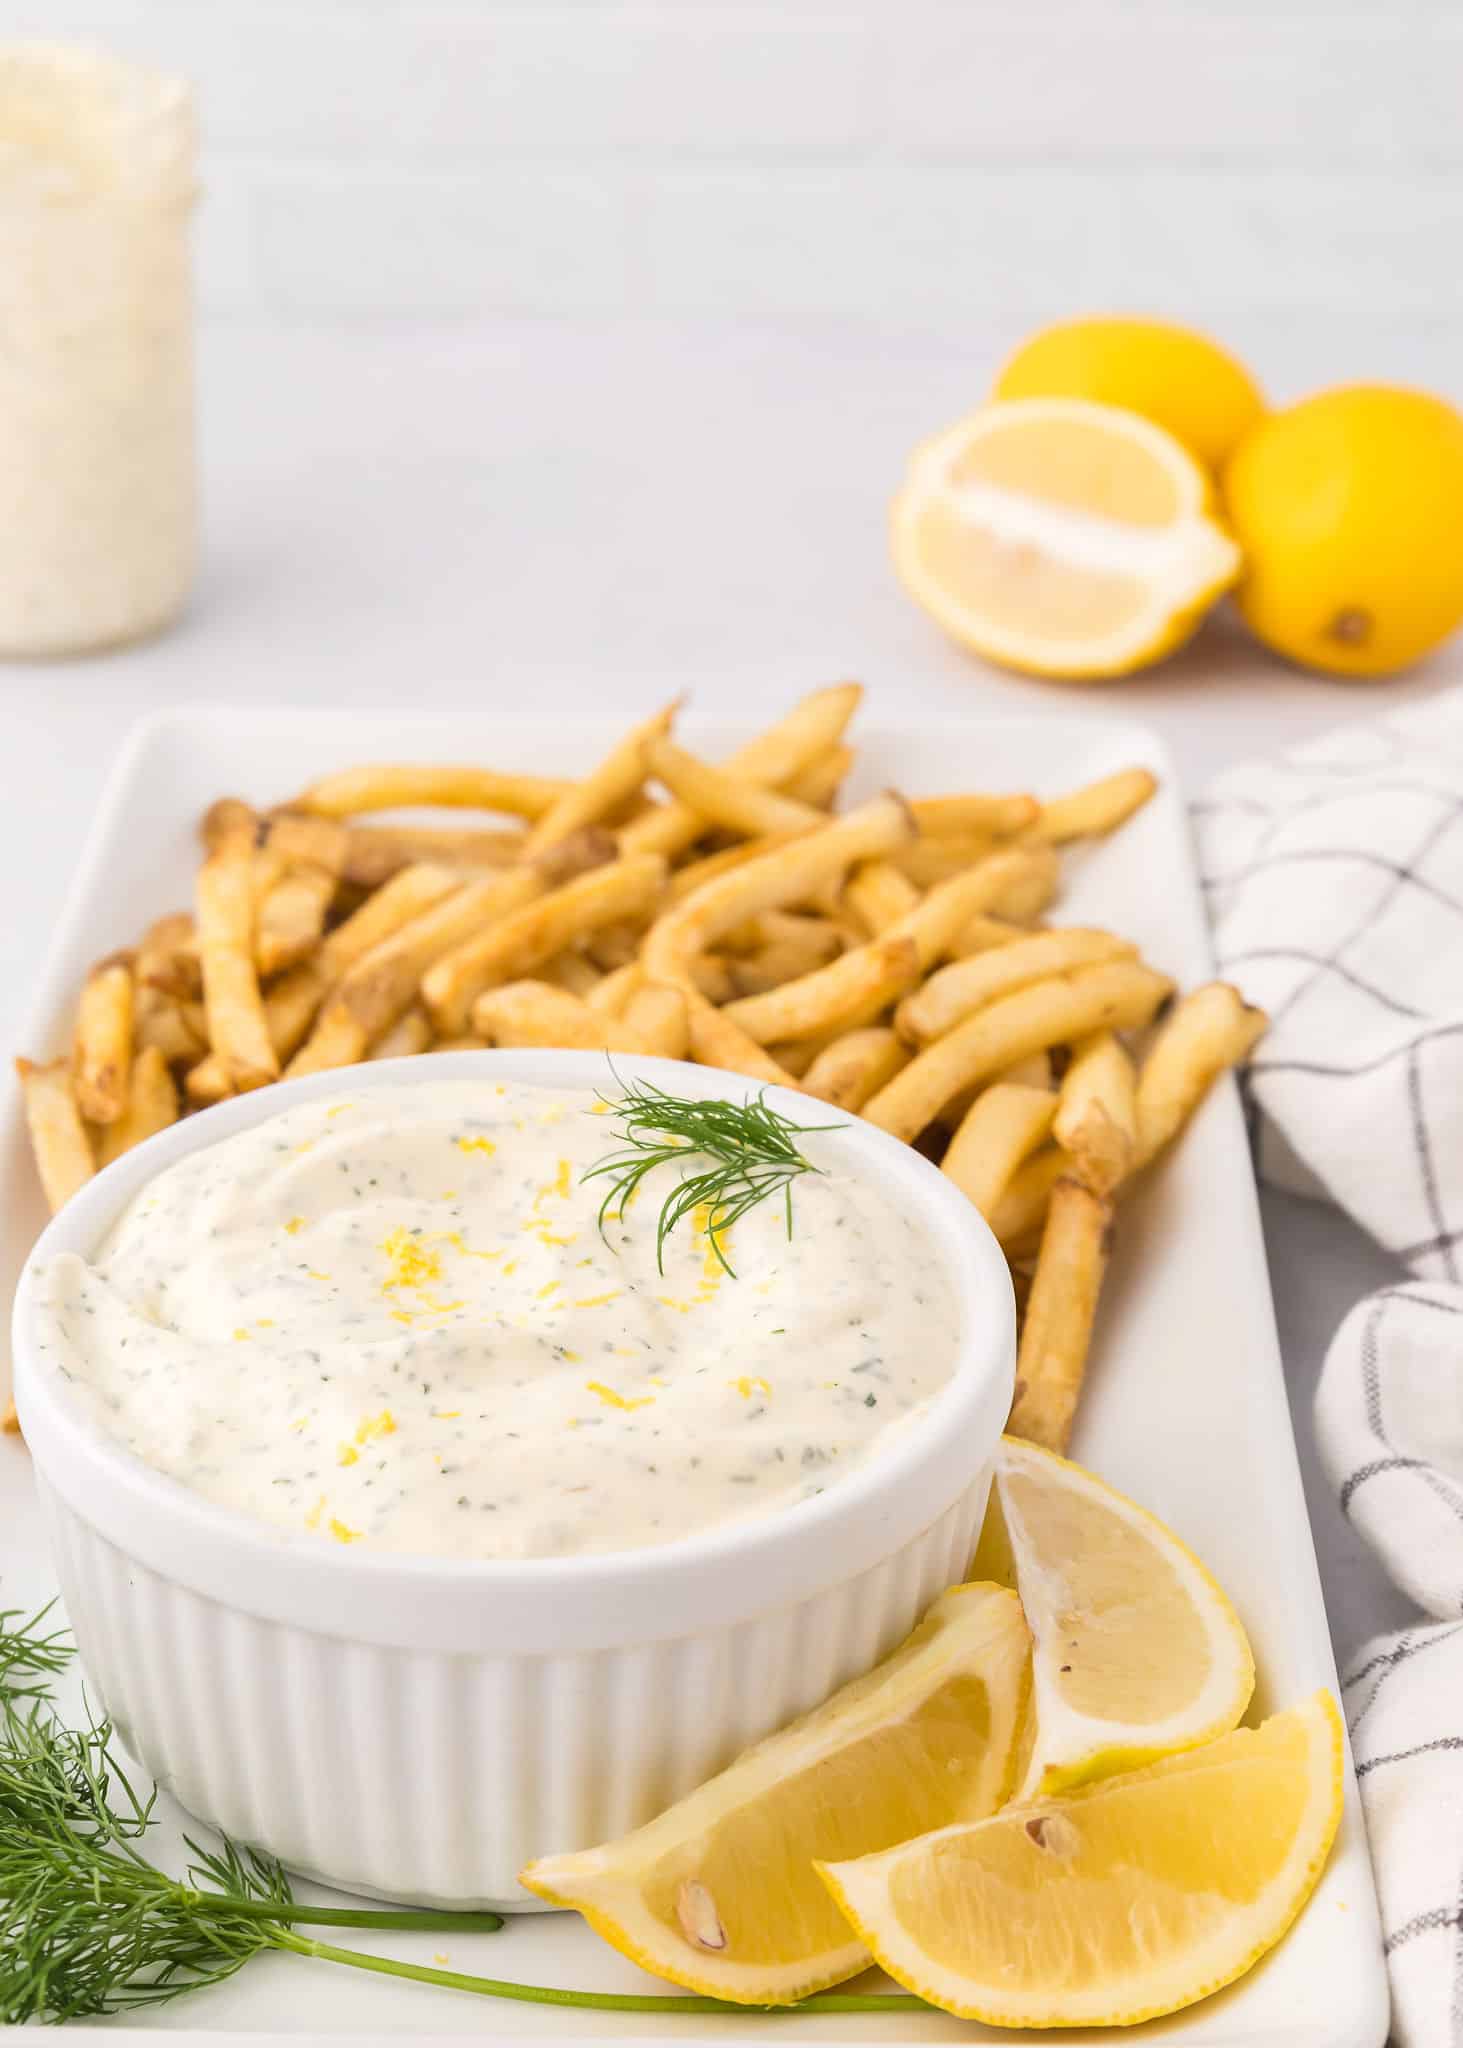 lemon dill aioli recipe (dill mayonnaise)